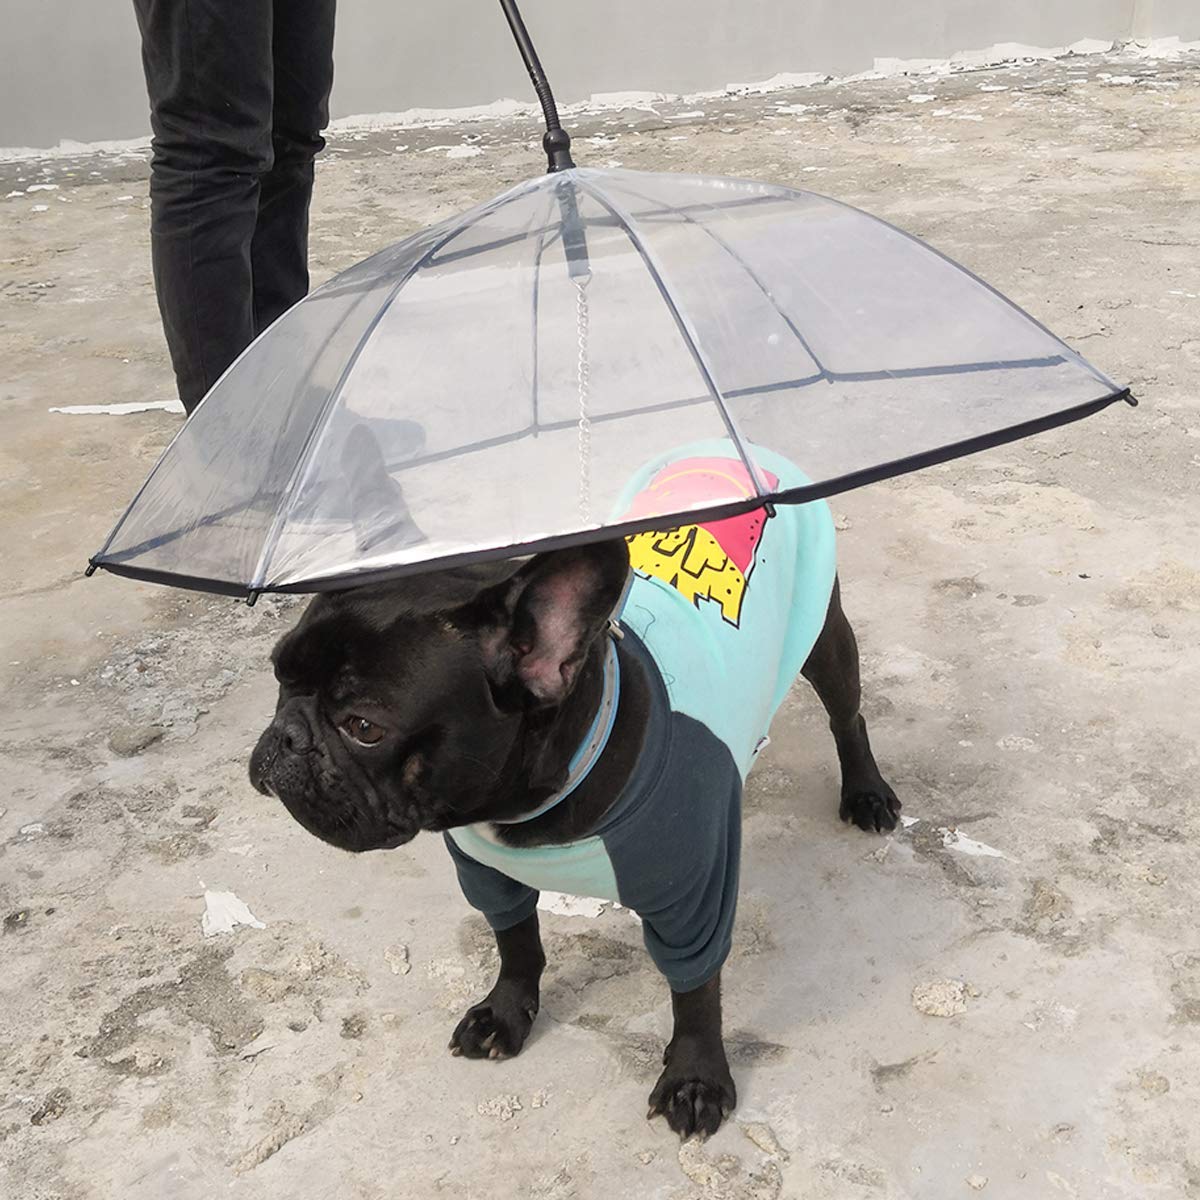 A dog umbrella